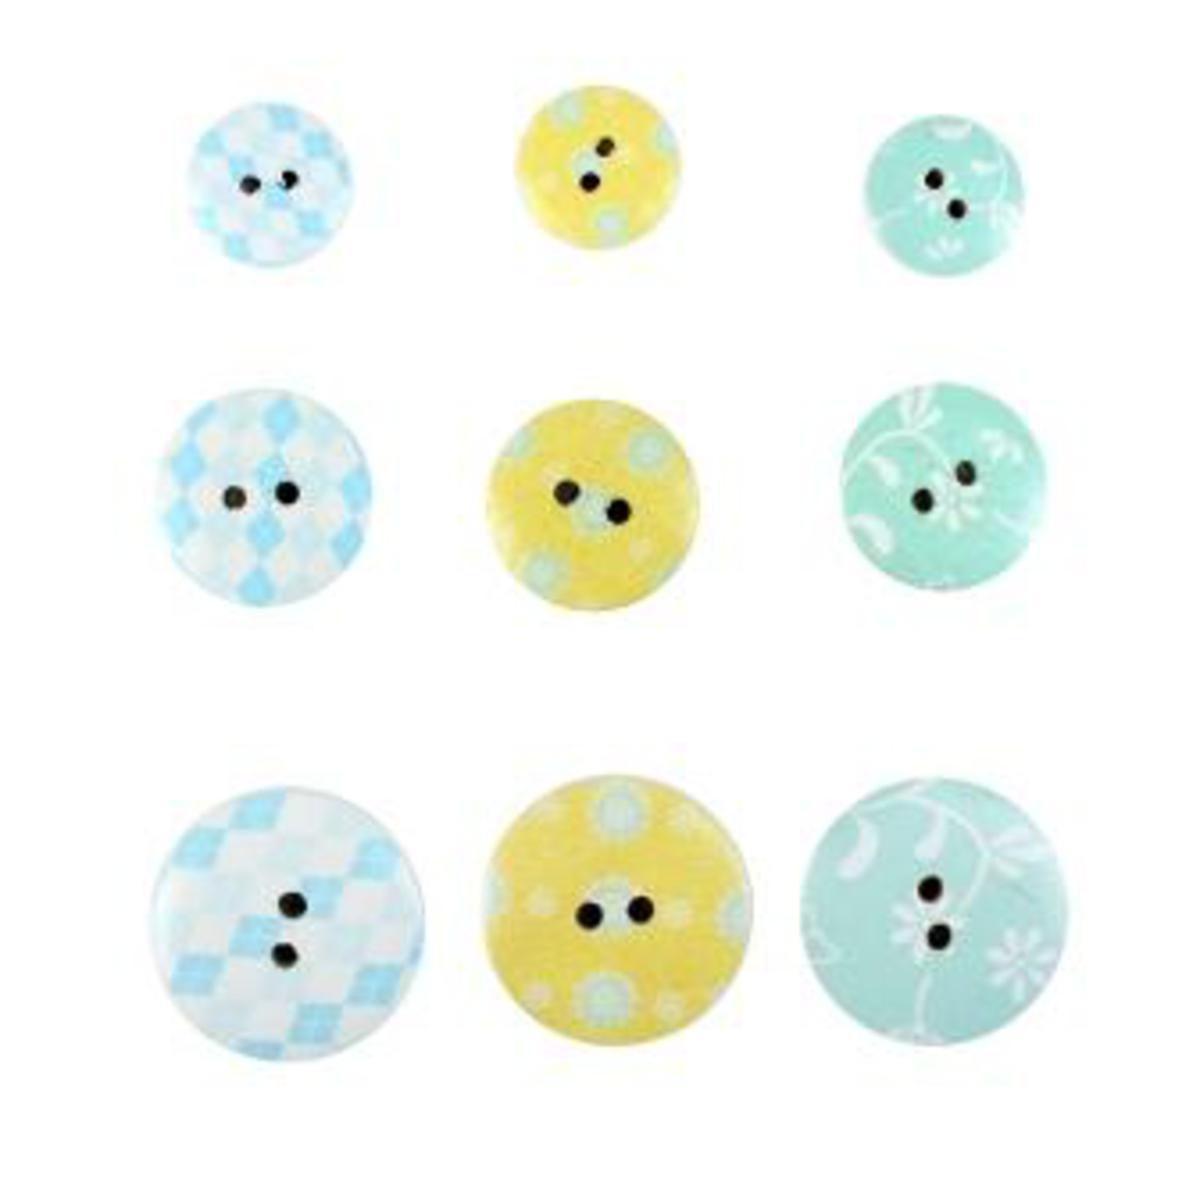 Lot de 9 boutons impression fleurs et jacquard - Bois - 1,5-2-2,5 cm - Multicolore